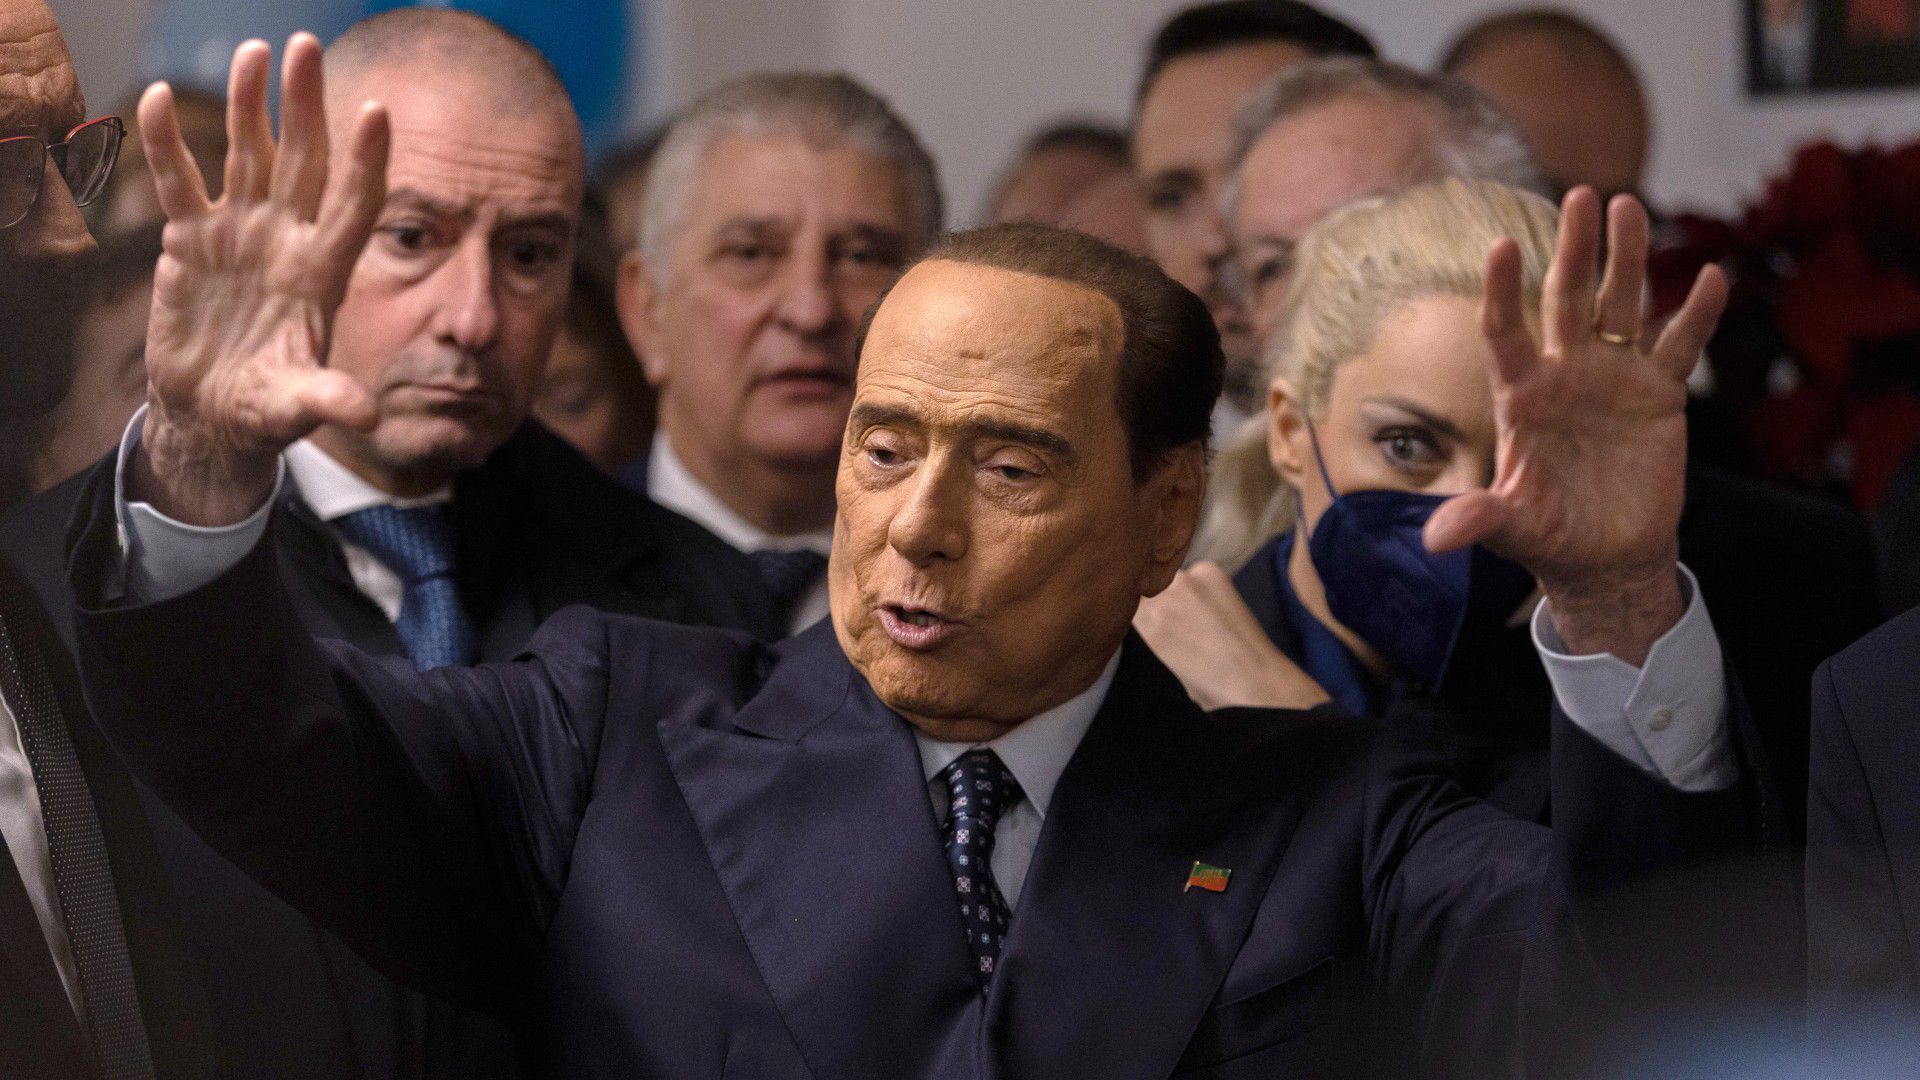 Egy busznyi k..vát ígért Berlusconi, a Juve legyőzése után százak kérik, hogy állja a szavát